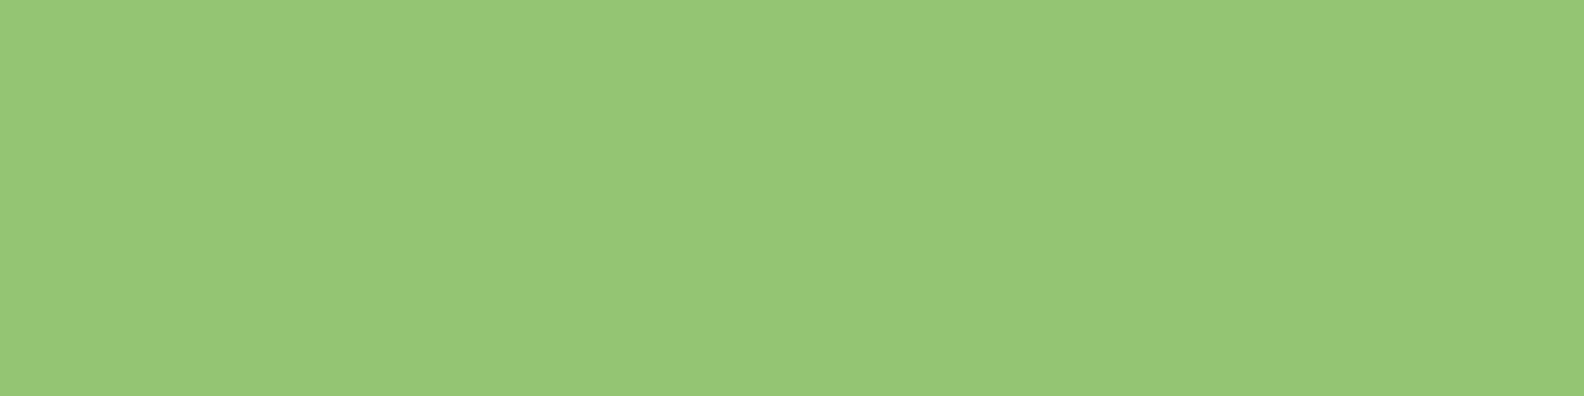 1584x396 Pistachio Solid Color Background